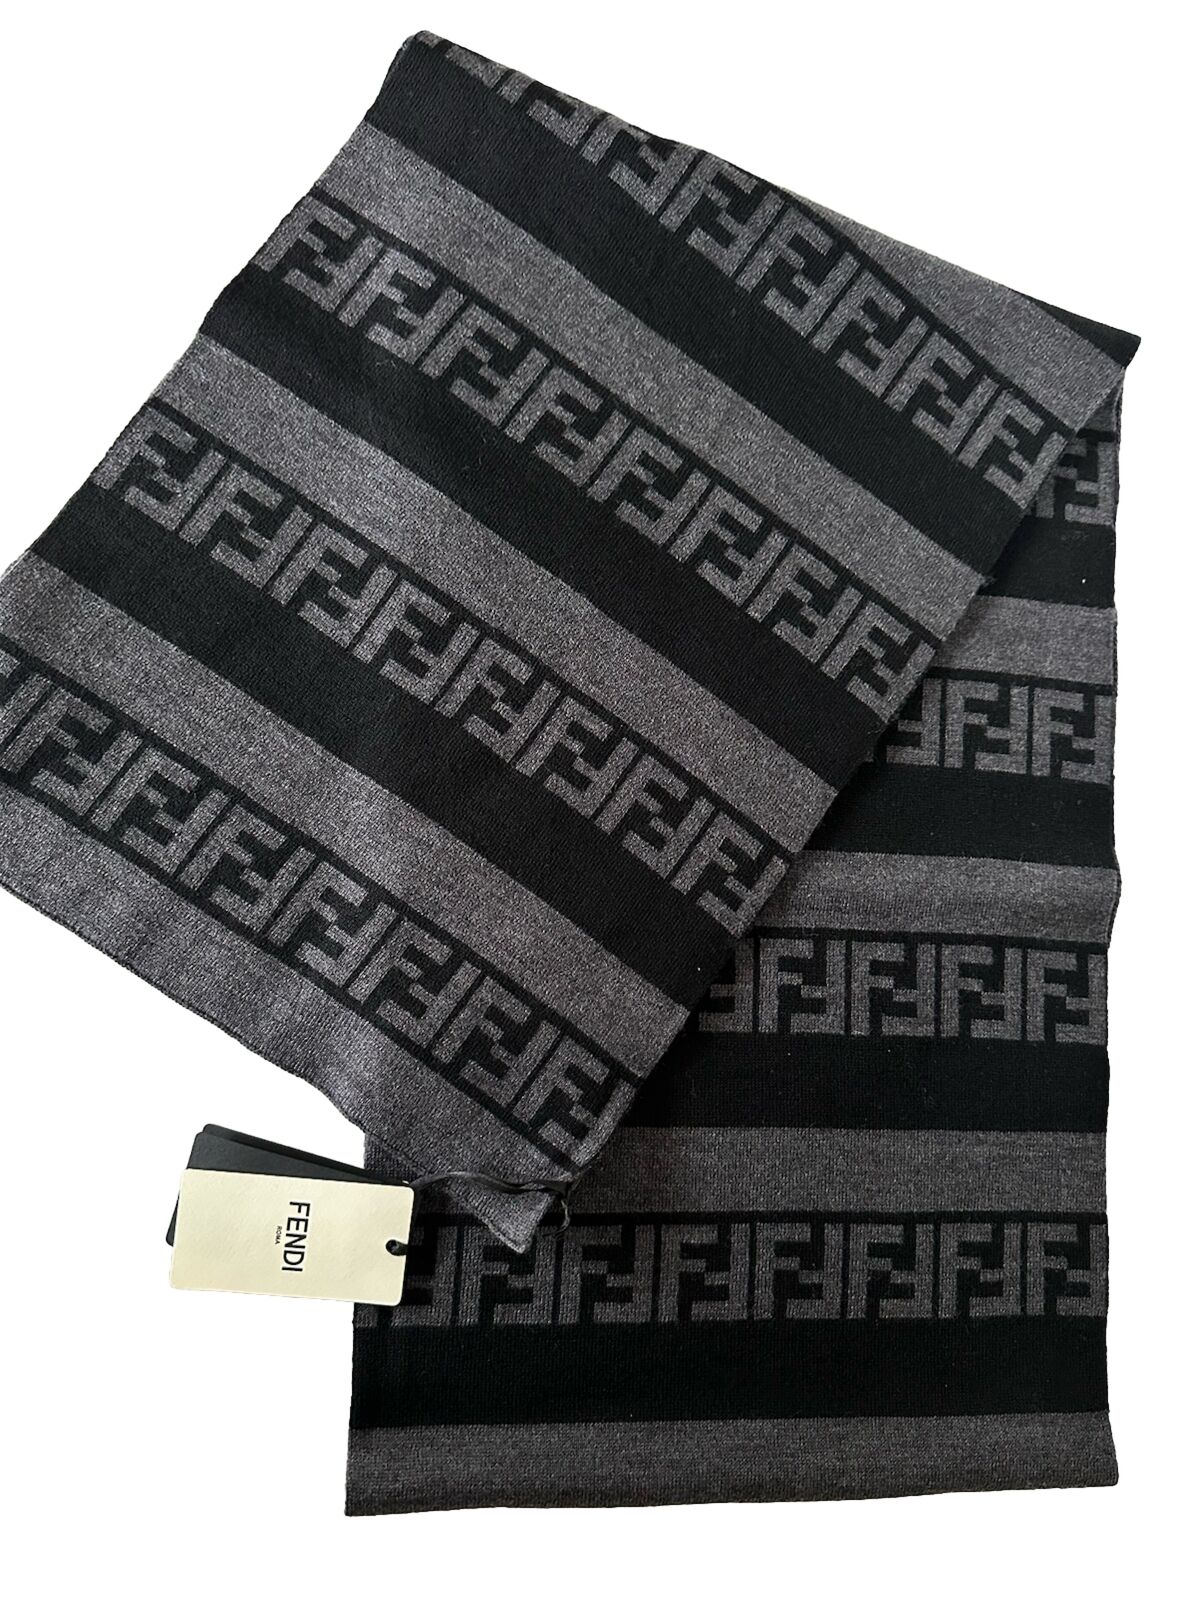 NWT $470 Fendi FF Logo Wool Black/Grey Scarf 12W x 73.5L FXS124 Italy